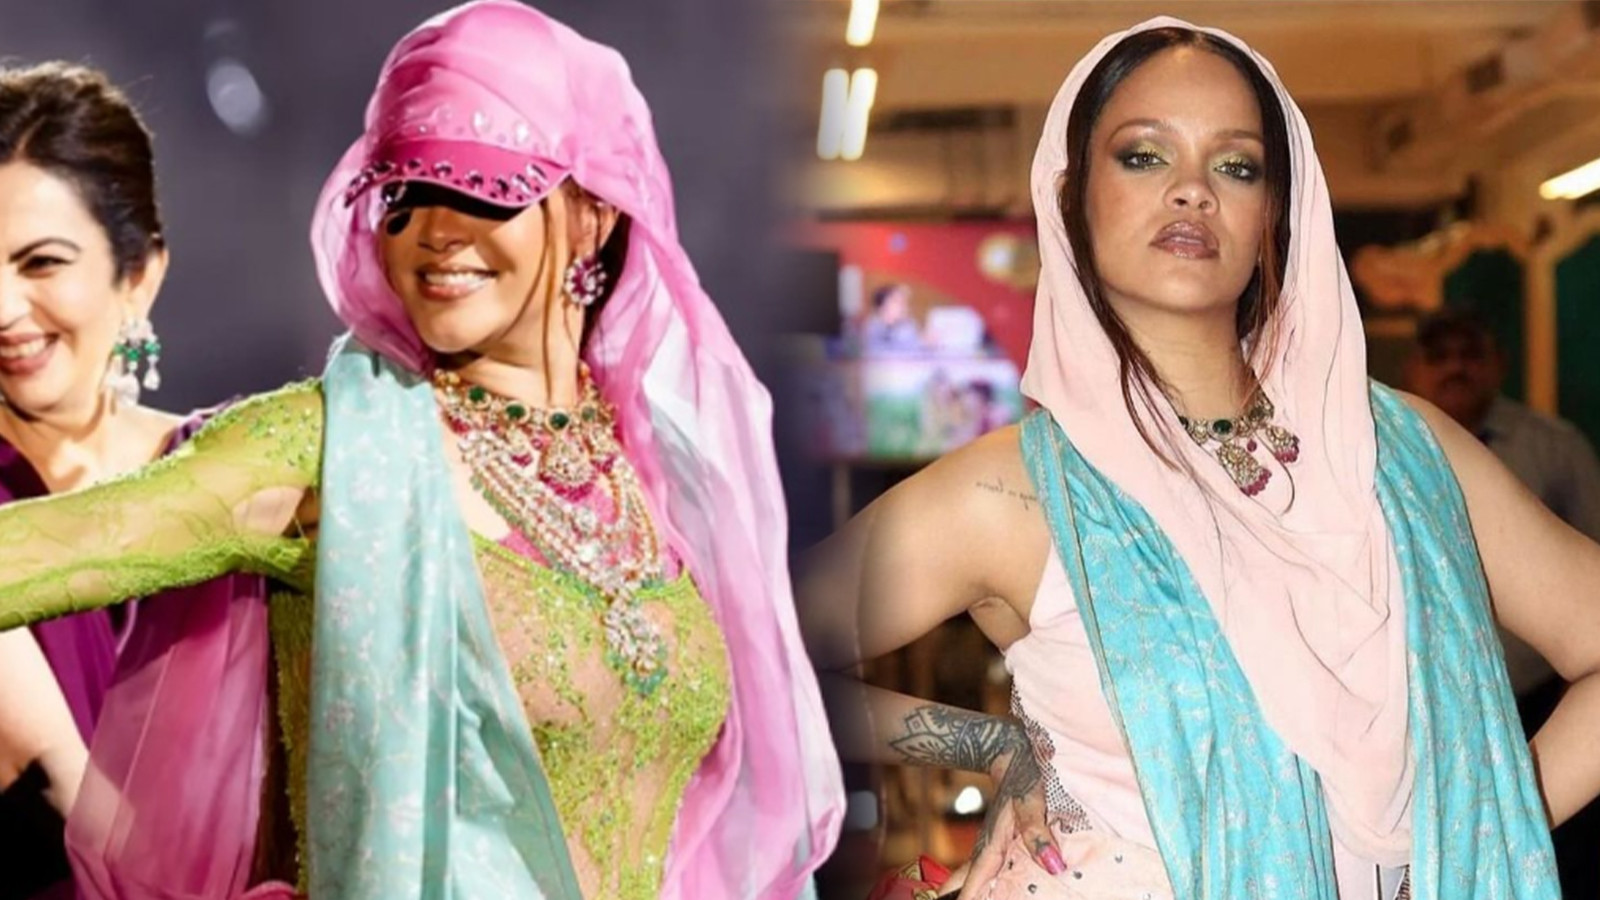 Dünyanın en pahalı düğününde sahne alan Rihanna tarzıyla alay konusu oldu